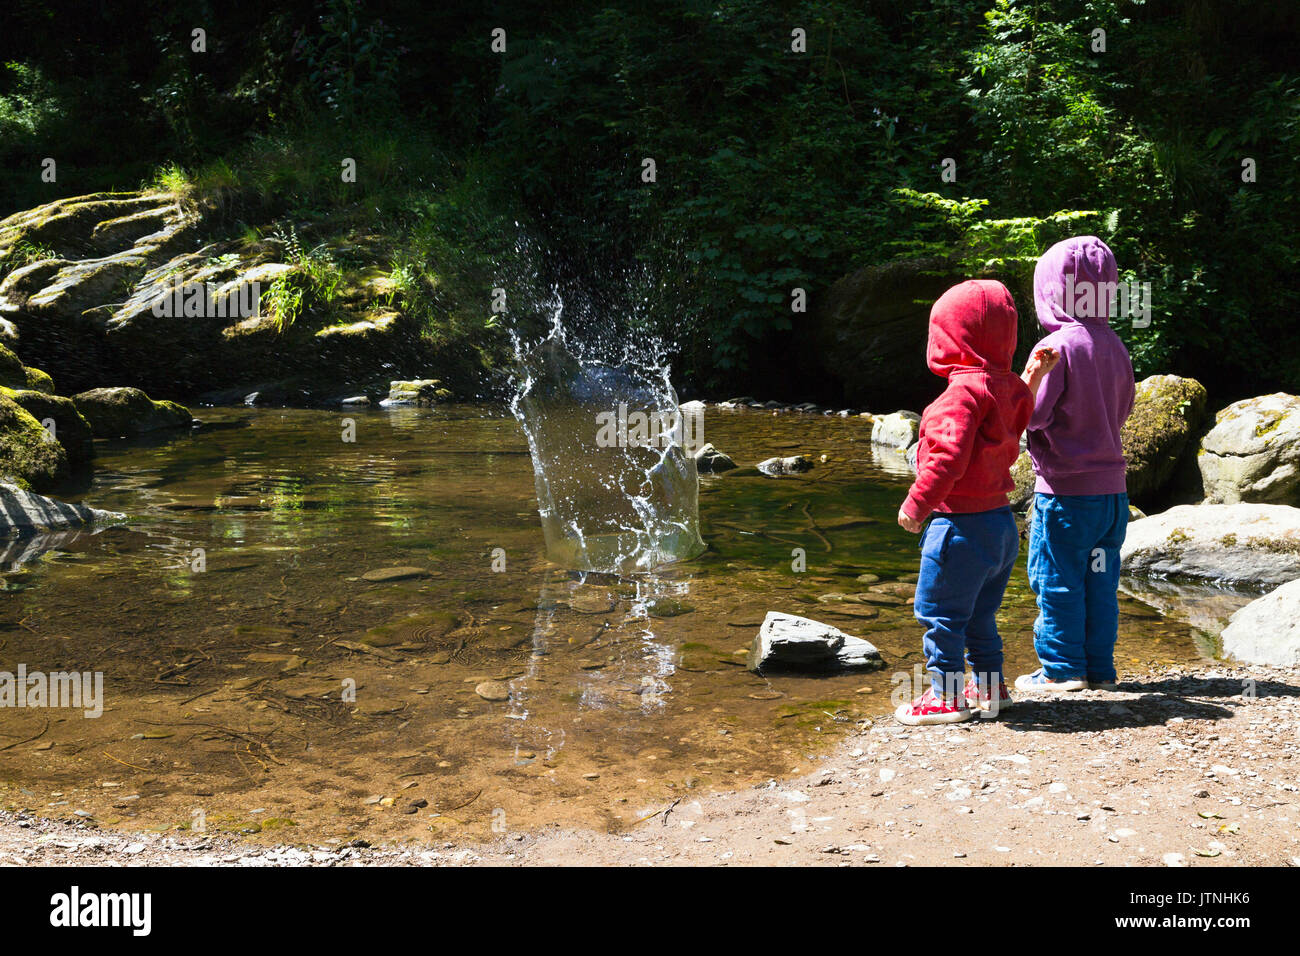 Deux jeunes enfants jettent des pierres dans l'eau Banque D'Images